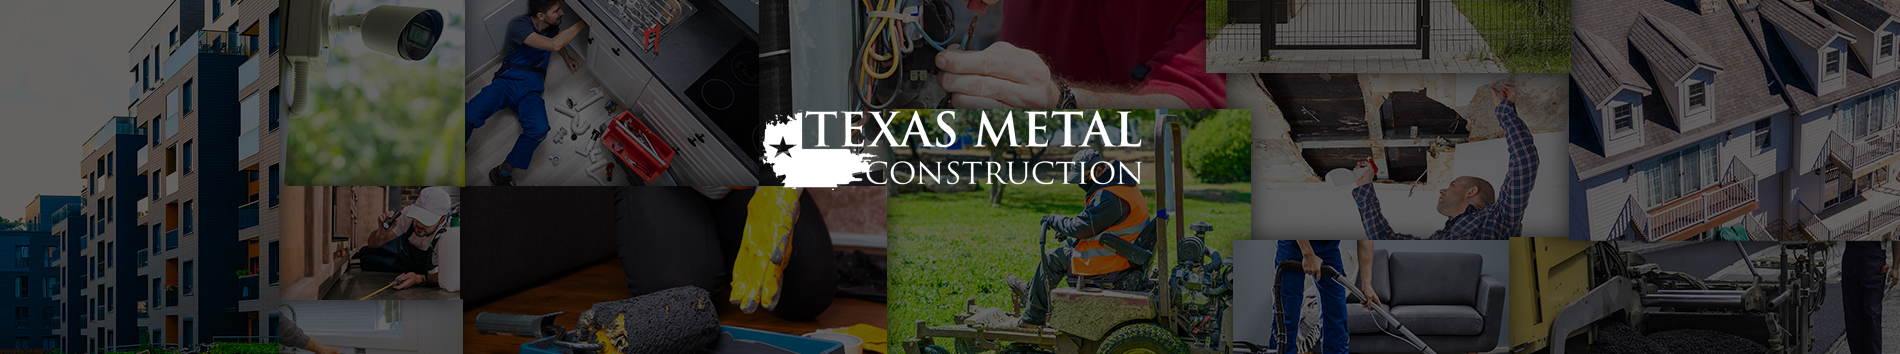 Texas Metal Construction